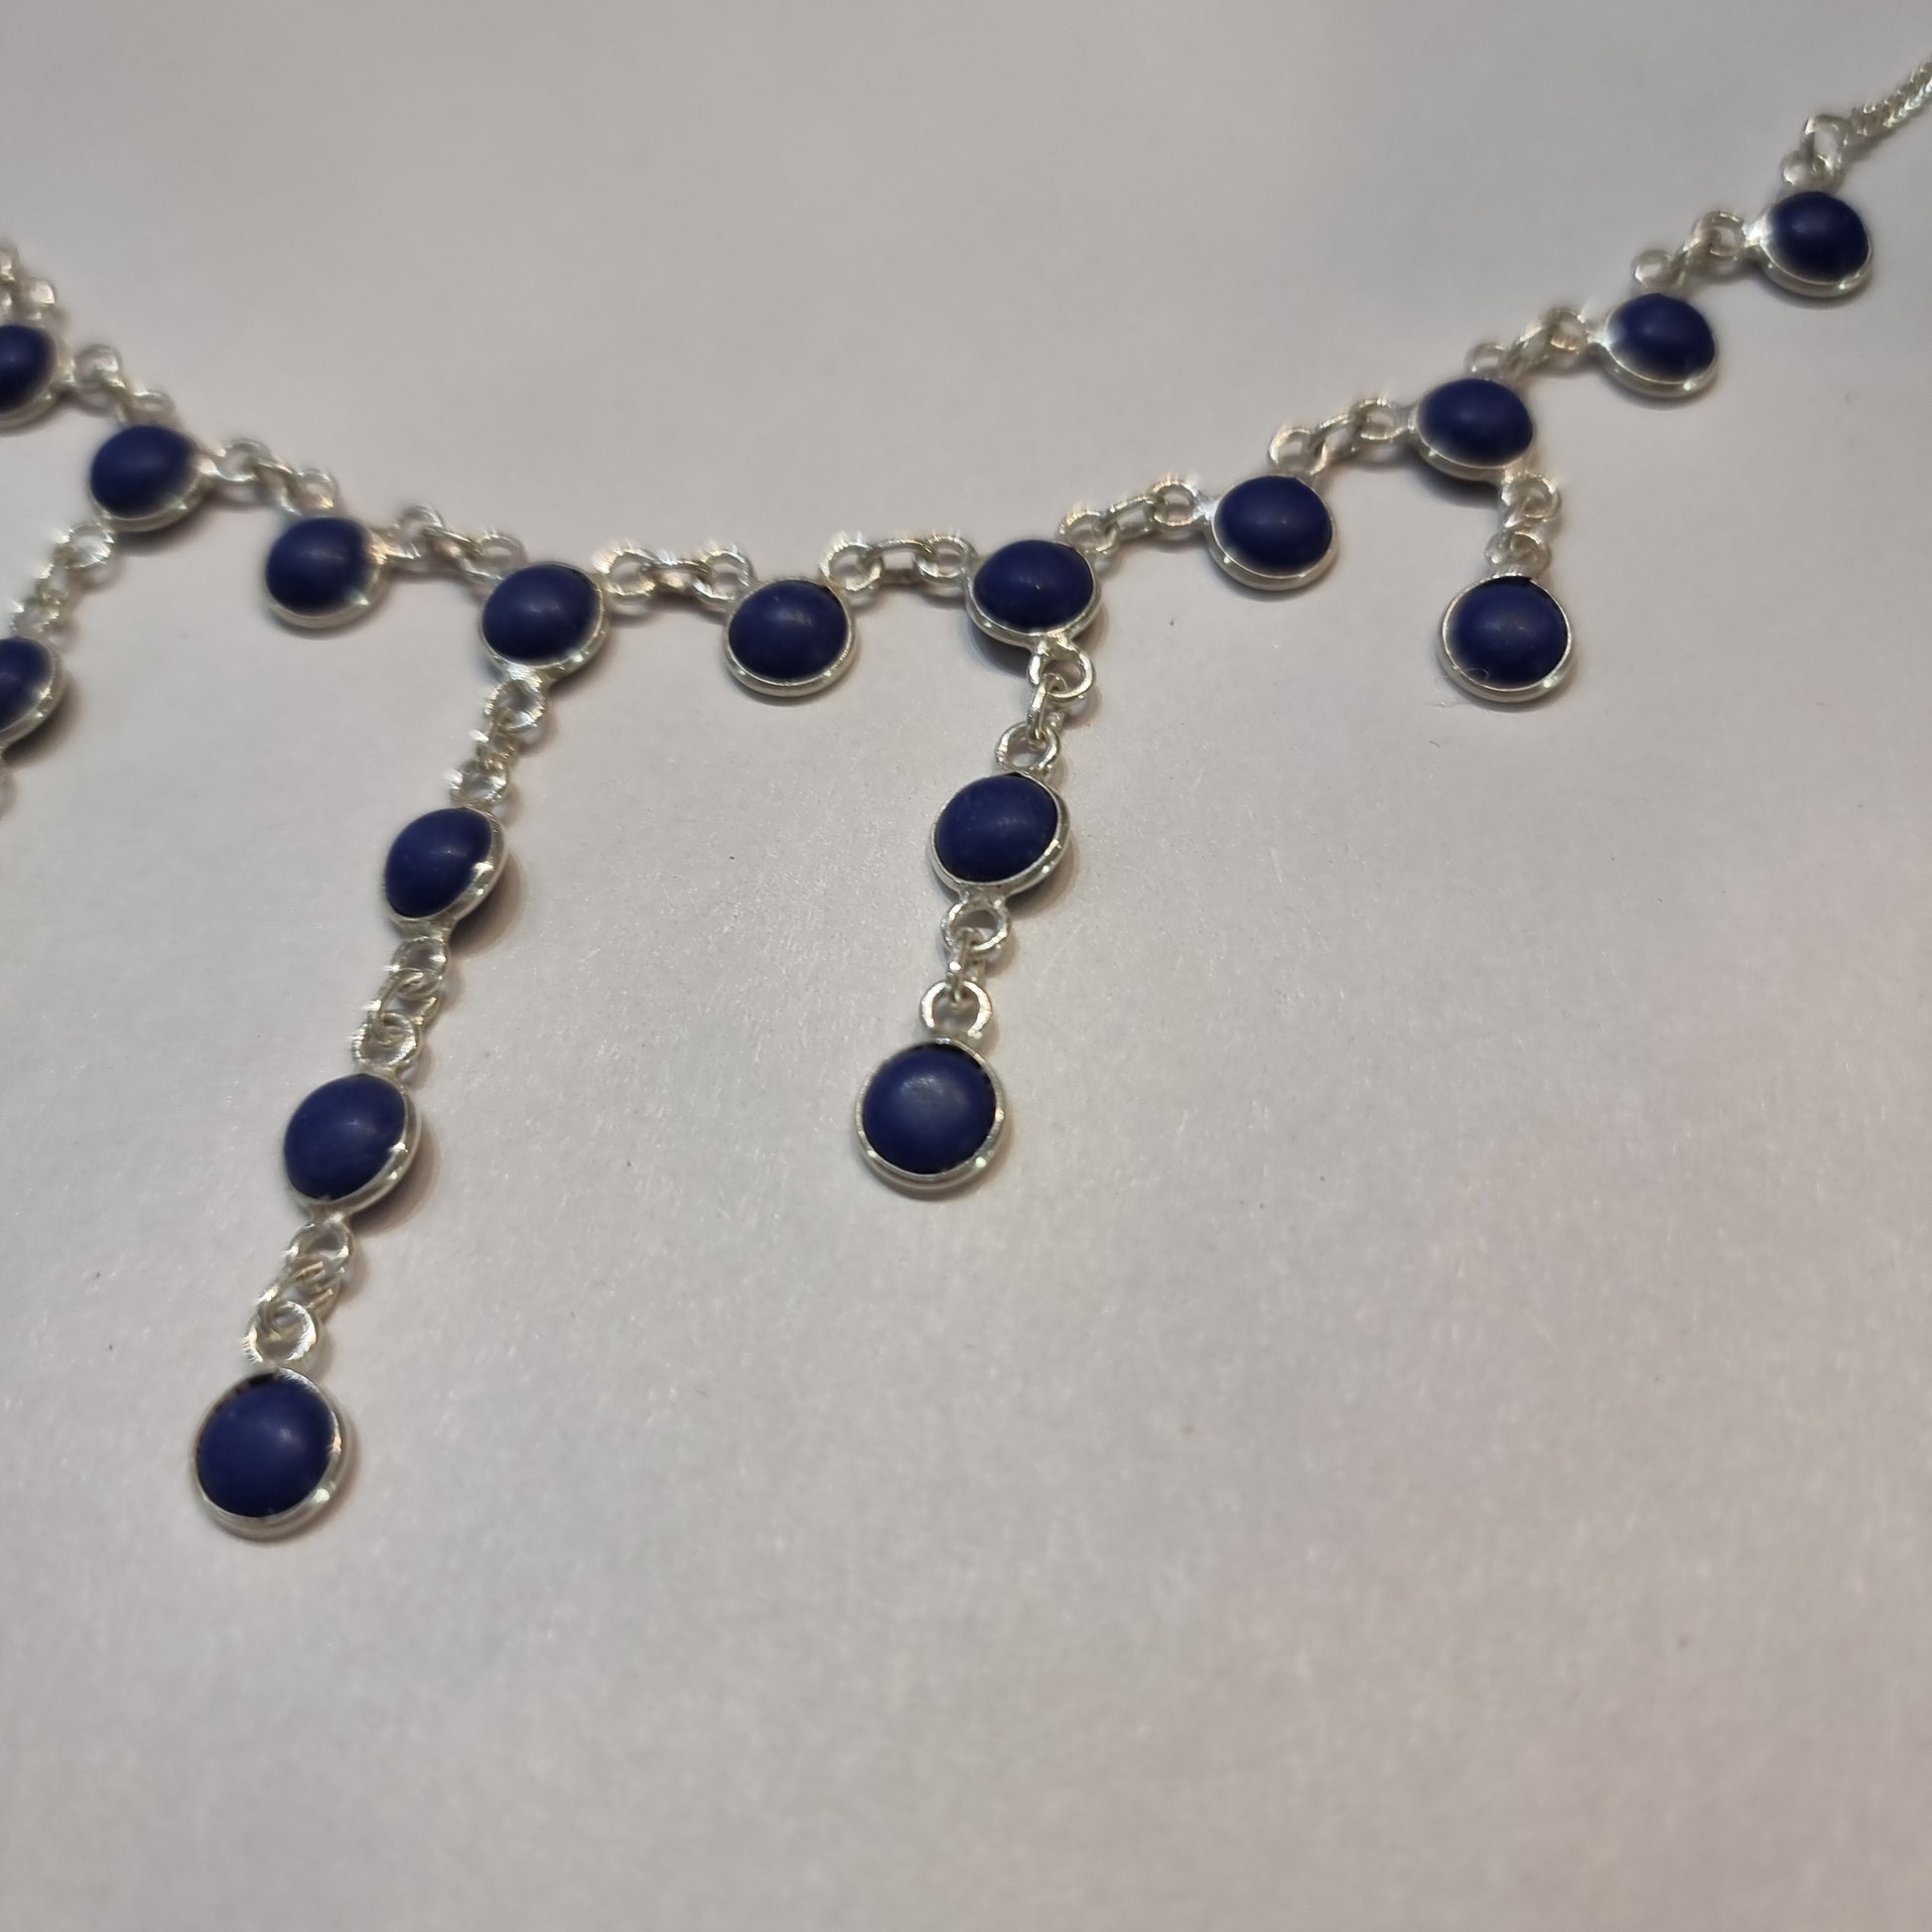 Lapis lazuli necklace - Rivendell Shop